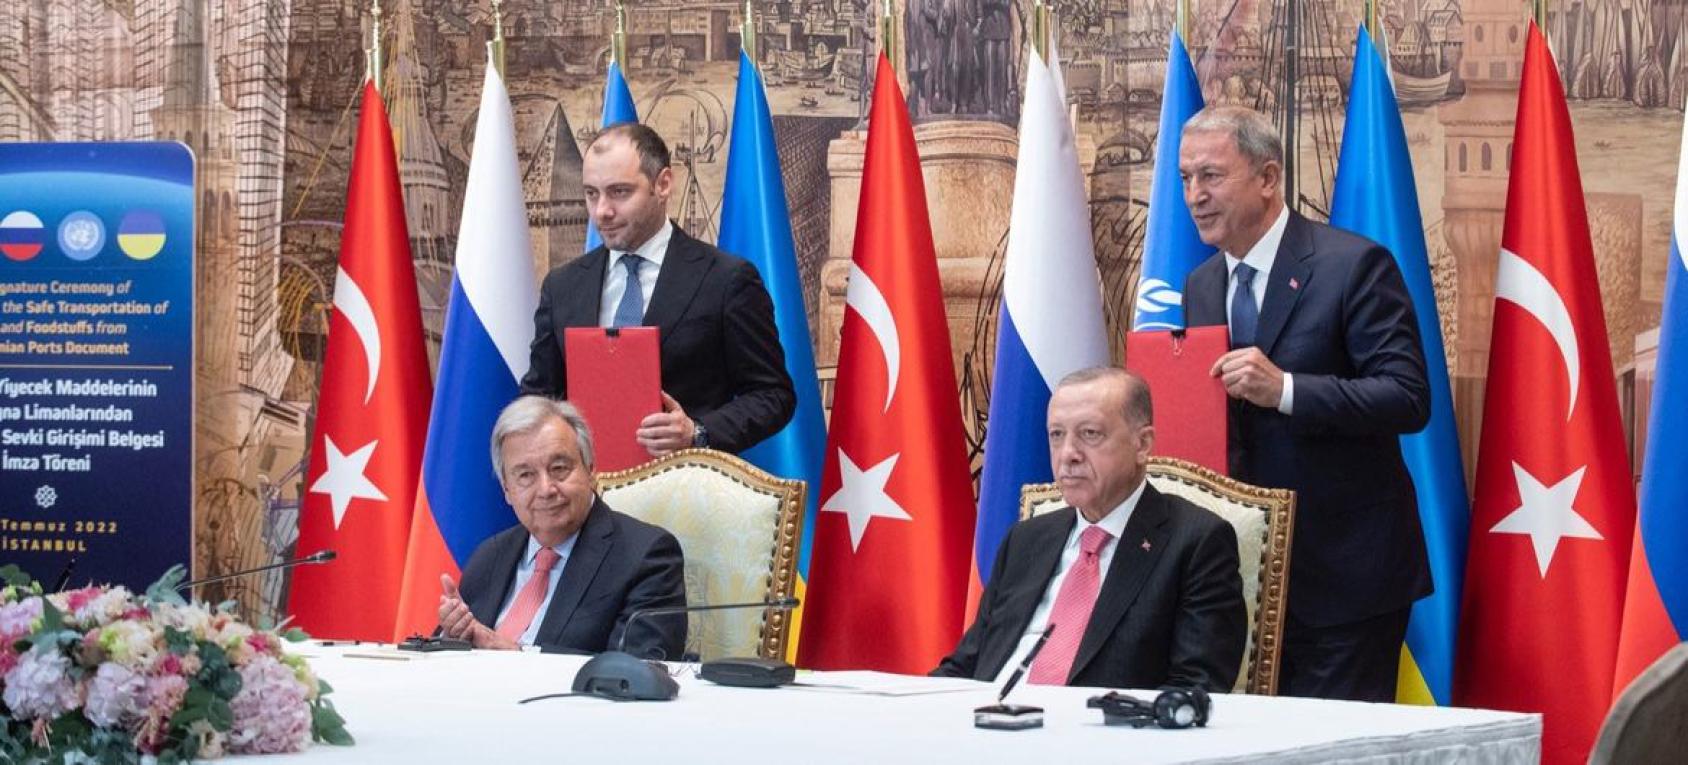 الأمين العام أنطونيو غوتيريش (إلى اليسار) والرئيس رجب طيب أردوغان في حفل توقيع مبادرة حبوب البحر الأسود في إسطنبول، تركيا.